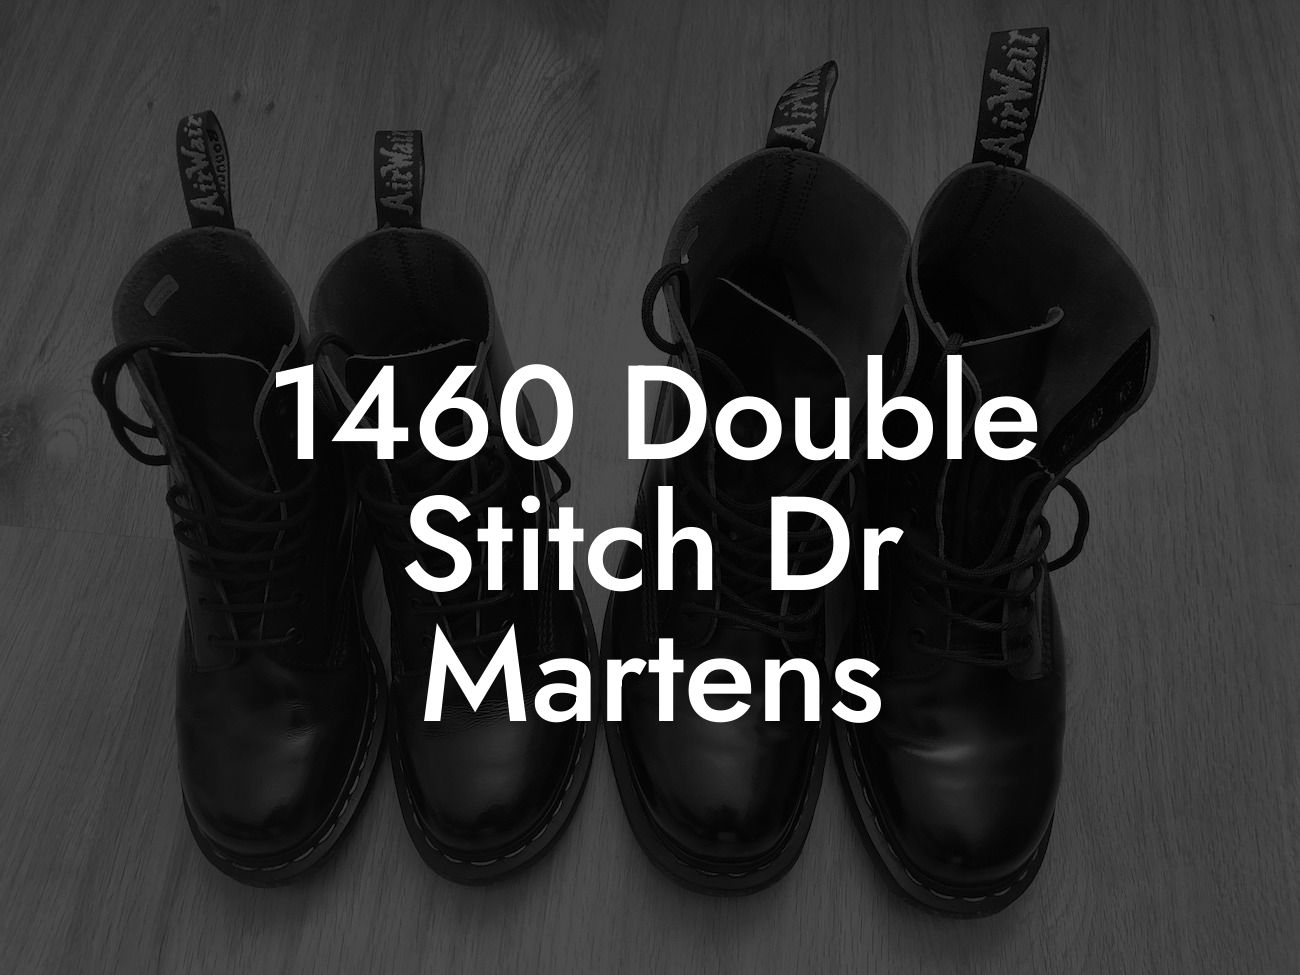 1460 Double Stitch Dr Martens